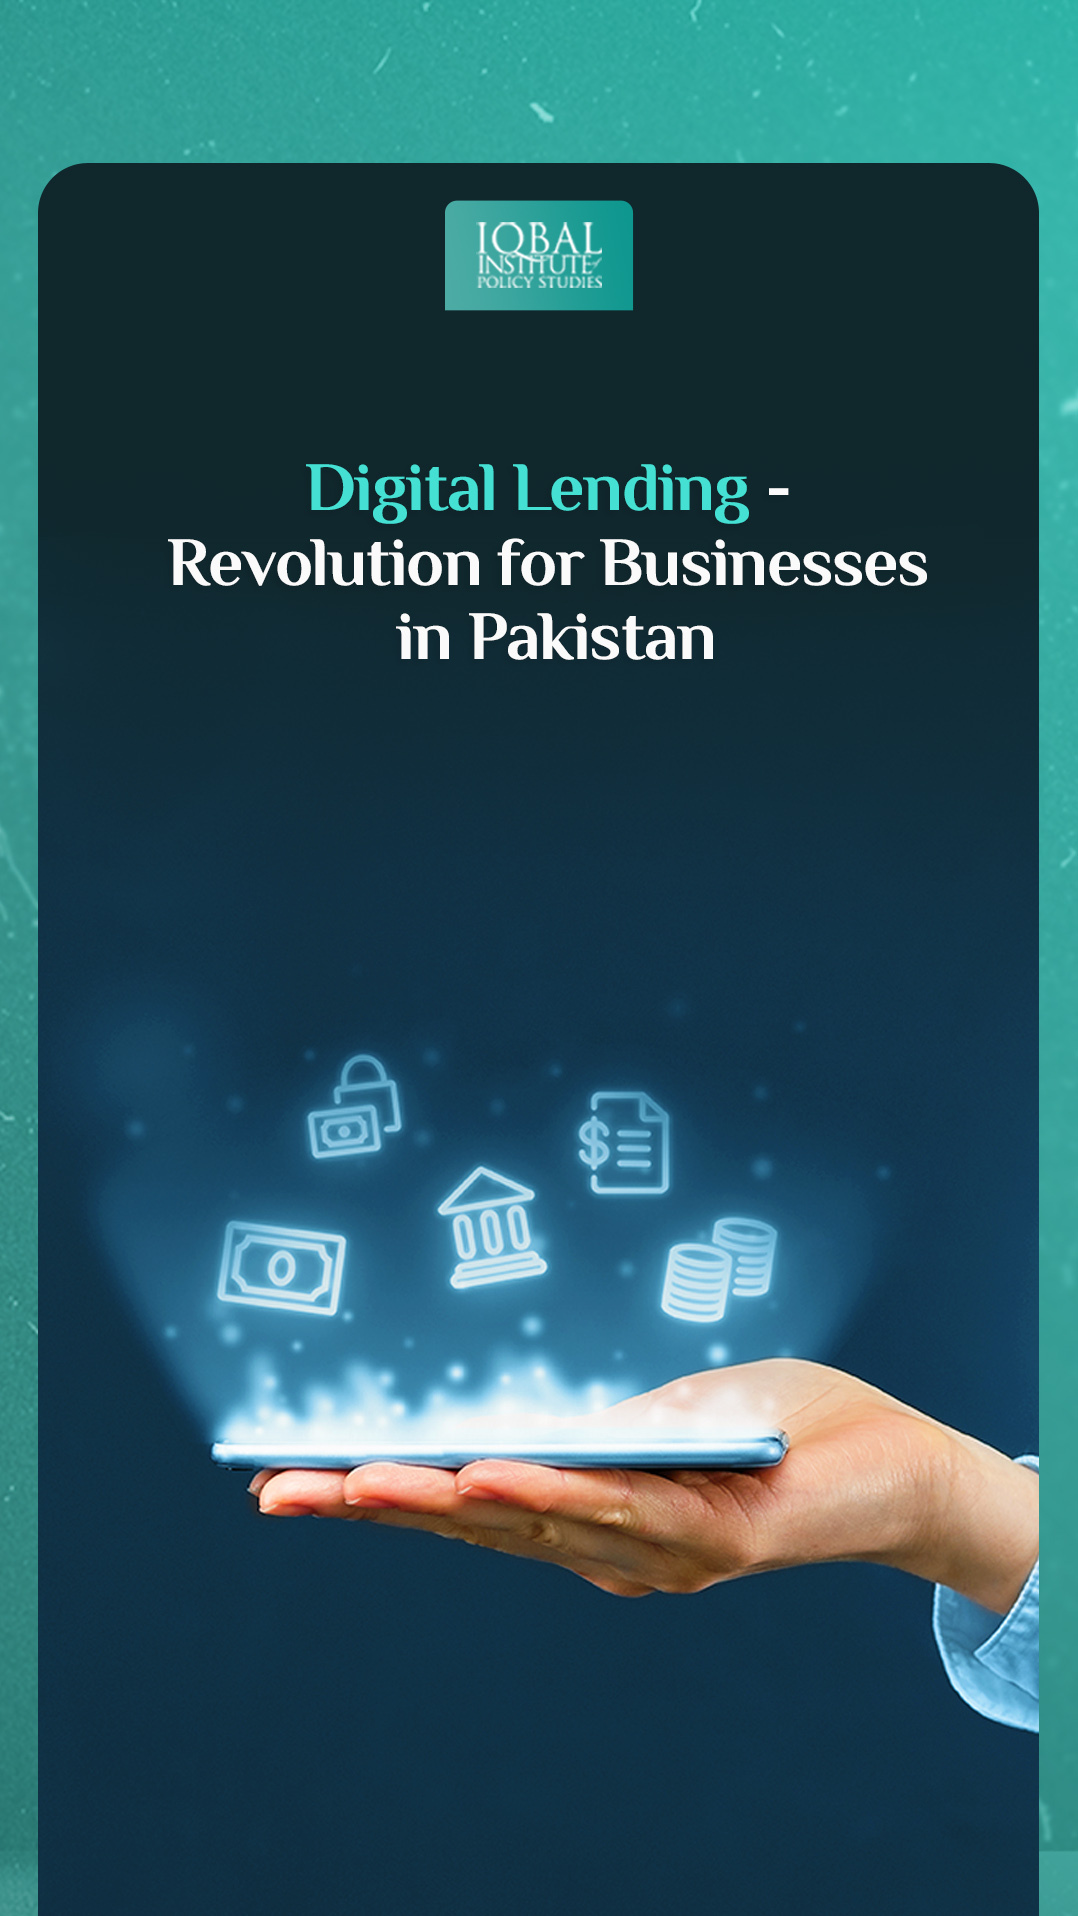 Digital Lending: Revolution for Businesses in Pakistan